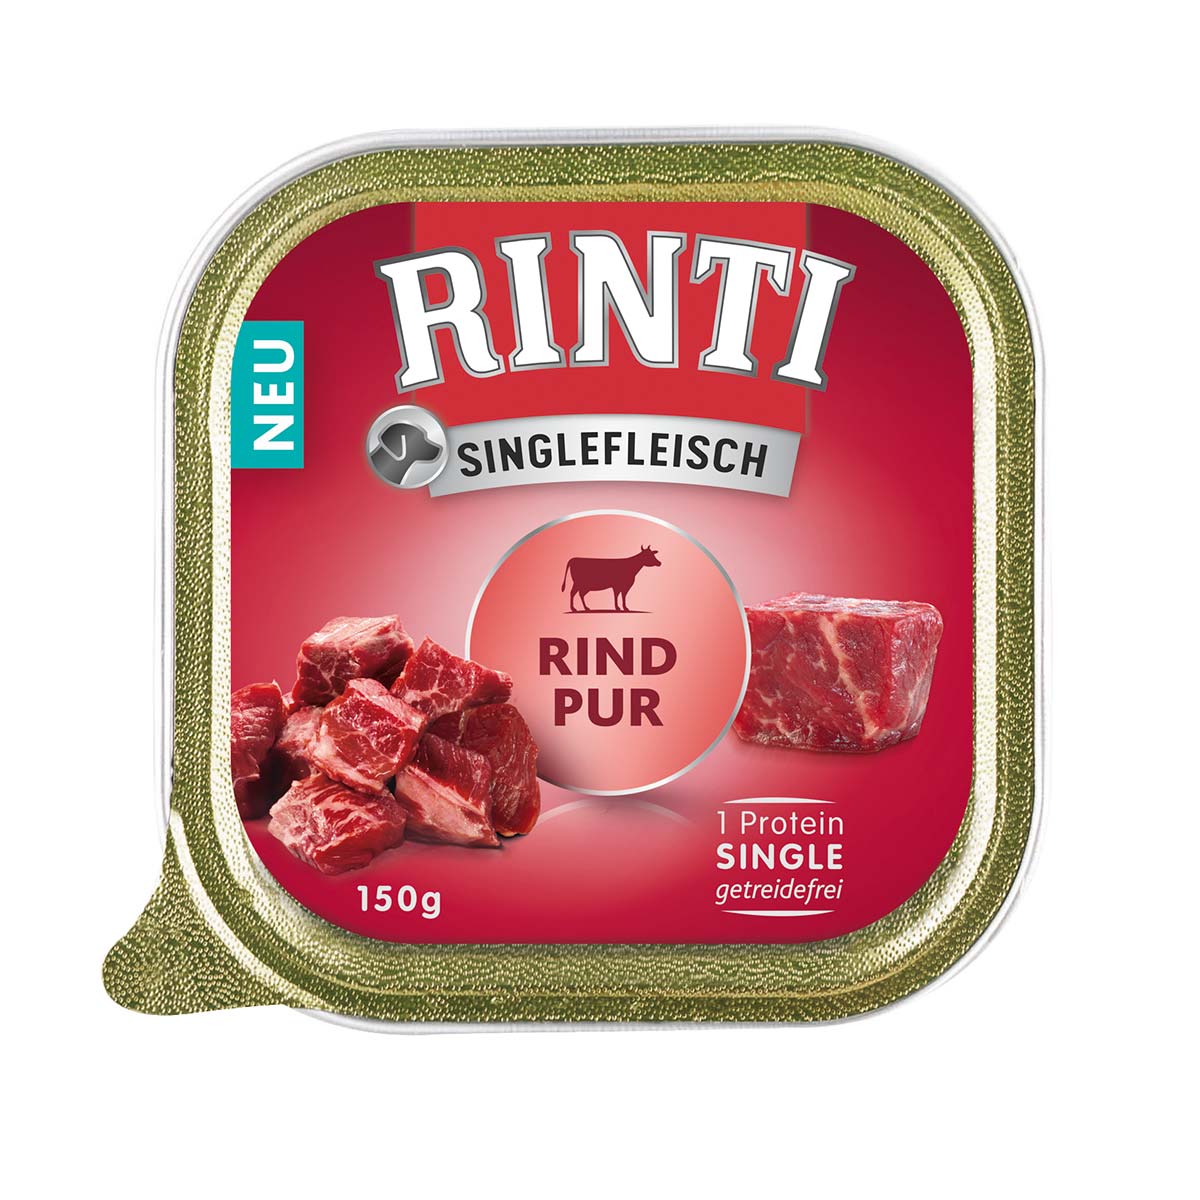 RINTI Singlefleisch Rind Pur 10x150g von Rinti